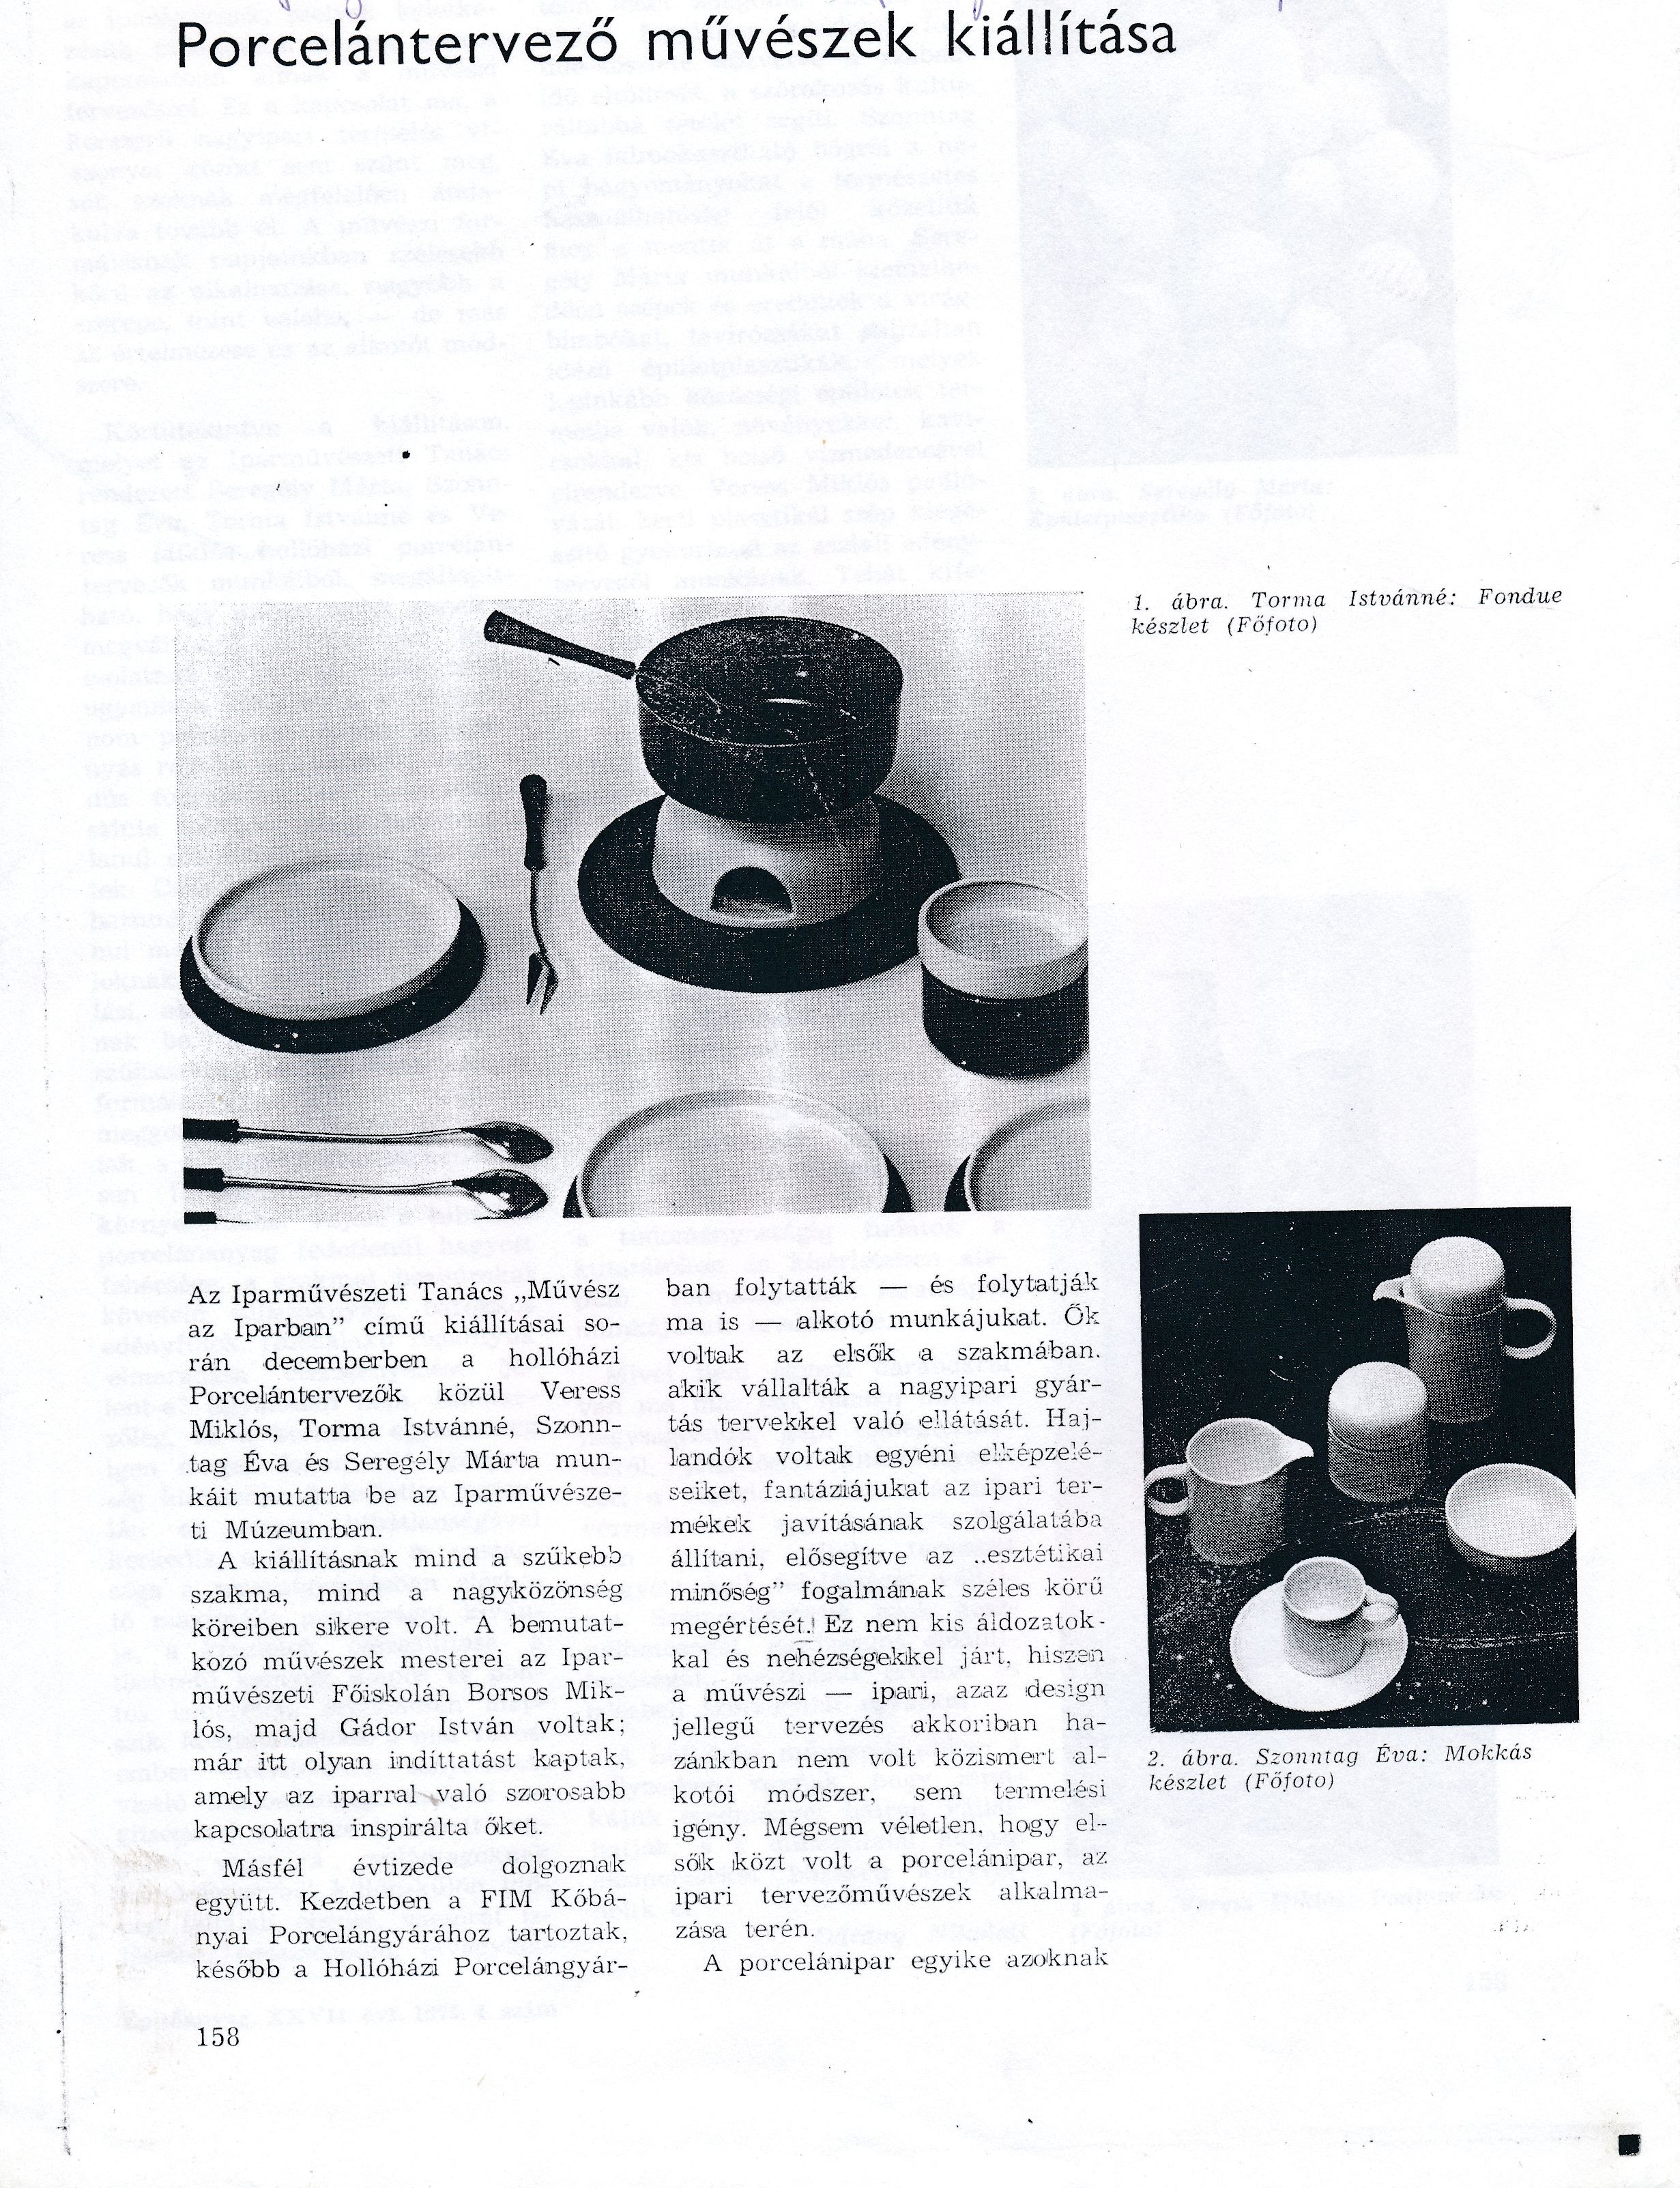 Porcelántervező művészek kiállítása cikk (Design DigiTár – Iparművészeti archívum CC BY-NC-SA)